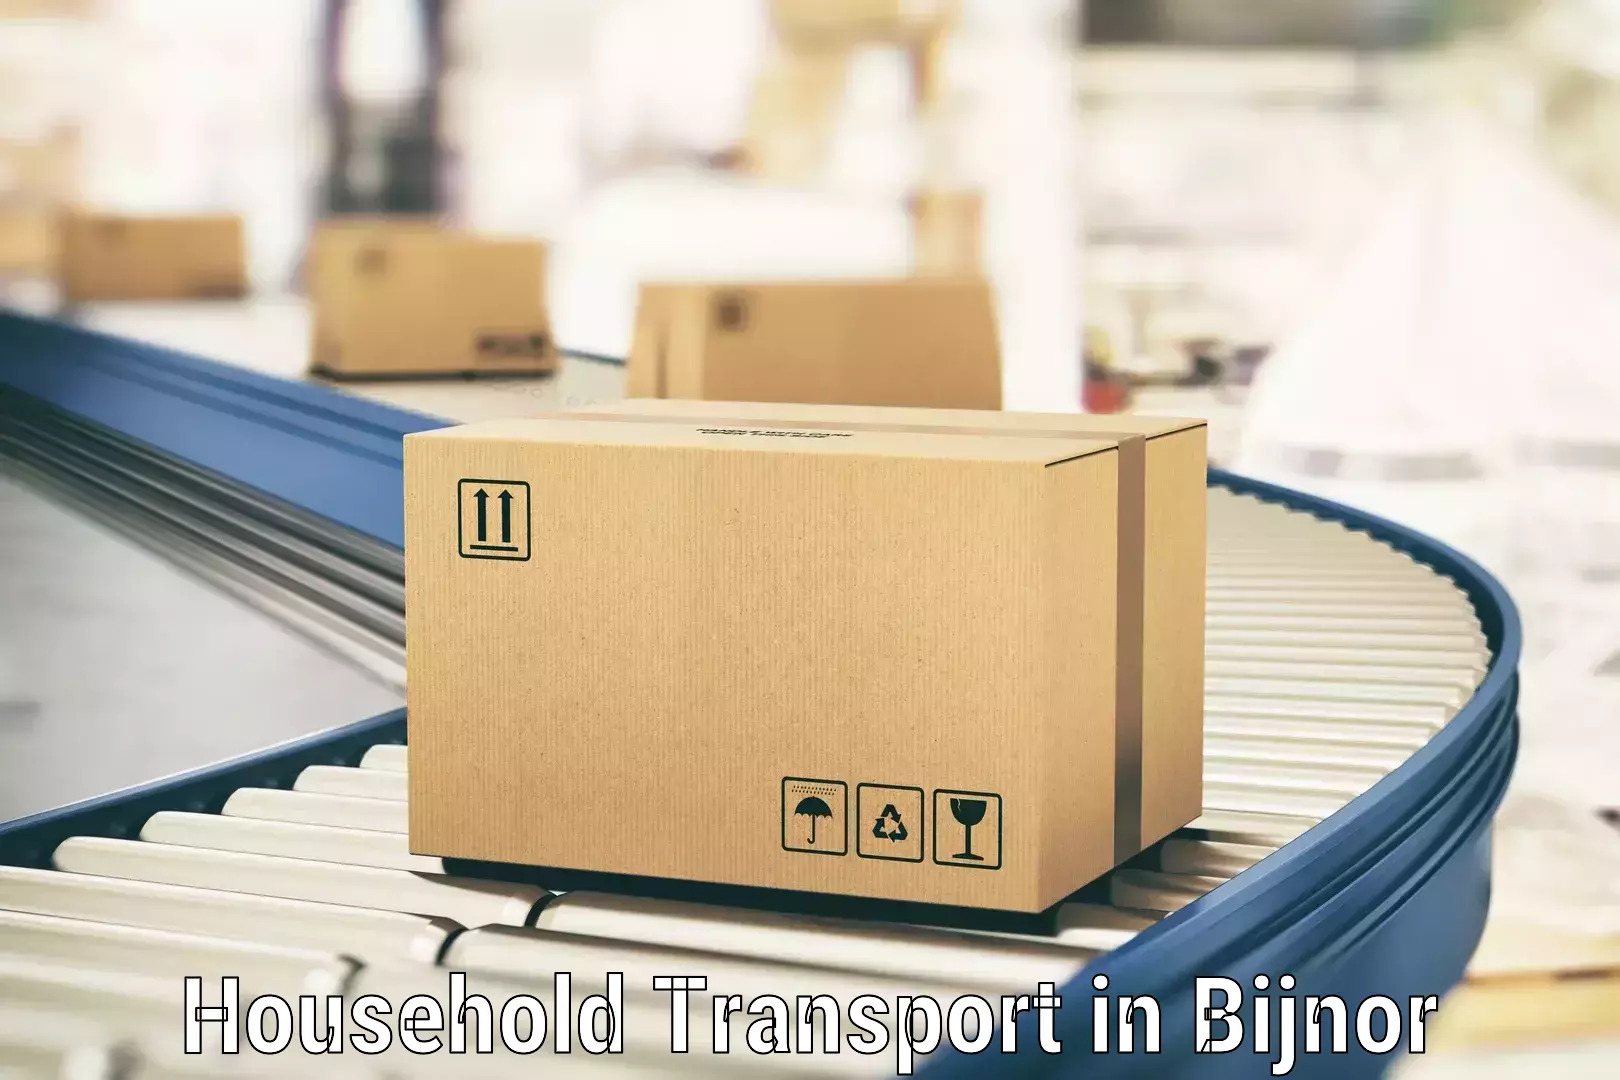 Expert household transport in Bijnor